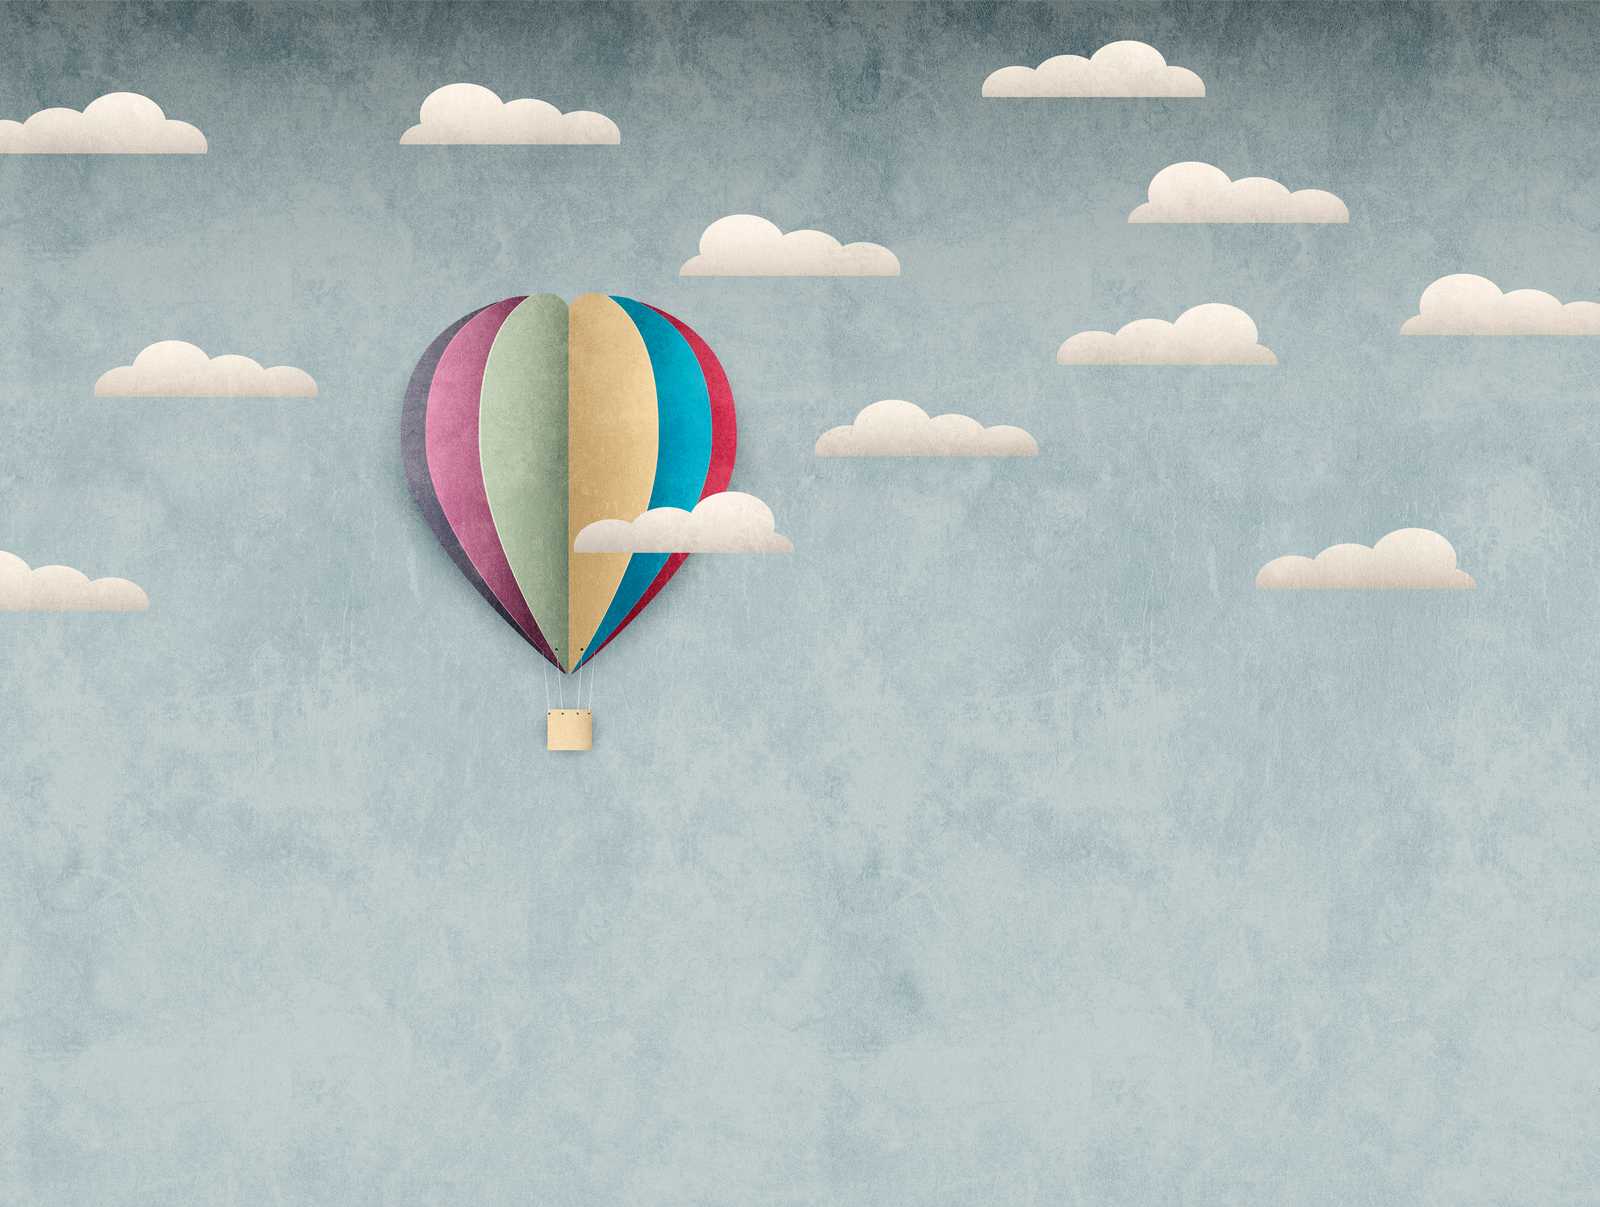             Nouveauté papier peint | papier peint à motifs montgolfière & ciel nuageux pour enfants
        